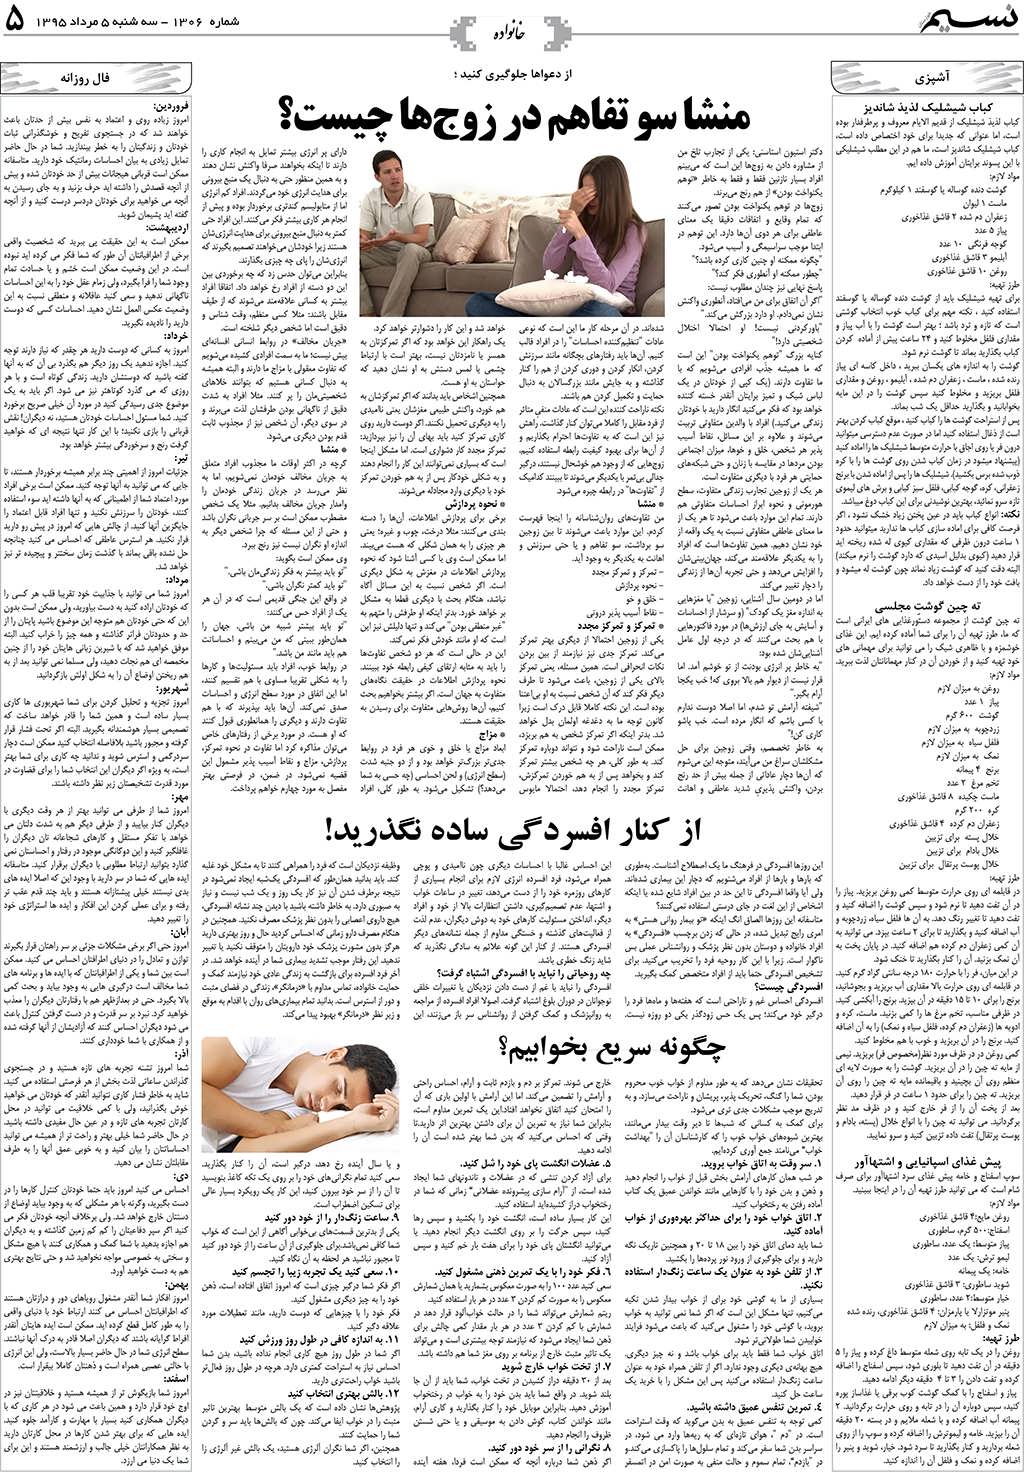 صفحه خانواده روزنامه نسیم شماره 1306